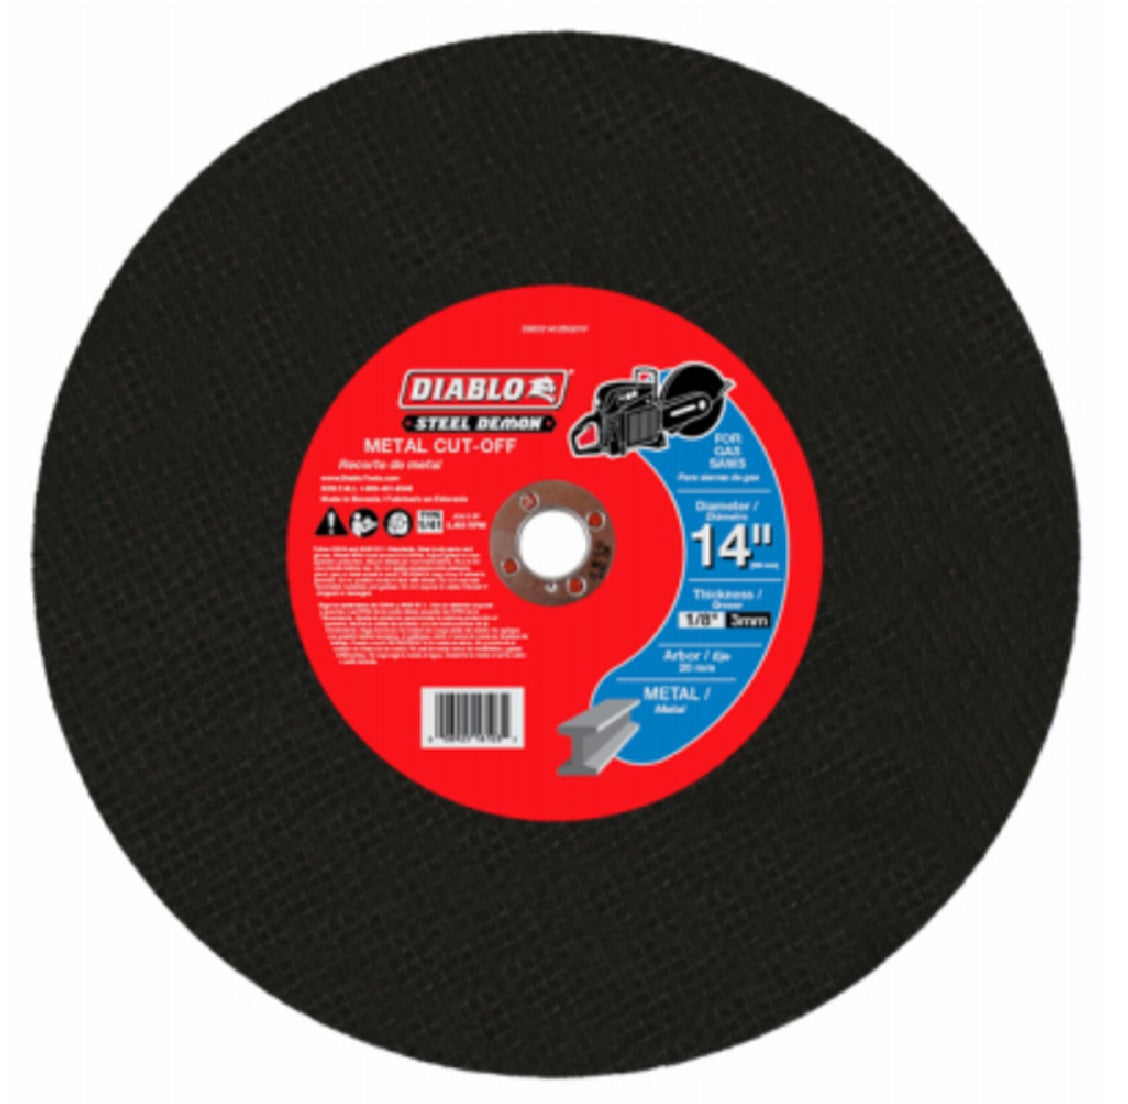 Diablo DBDS14125G01F Metal High Speed Cut Off Disc, 14 Inch